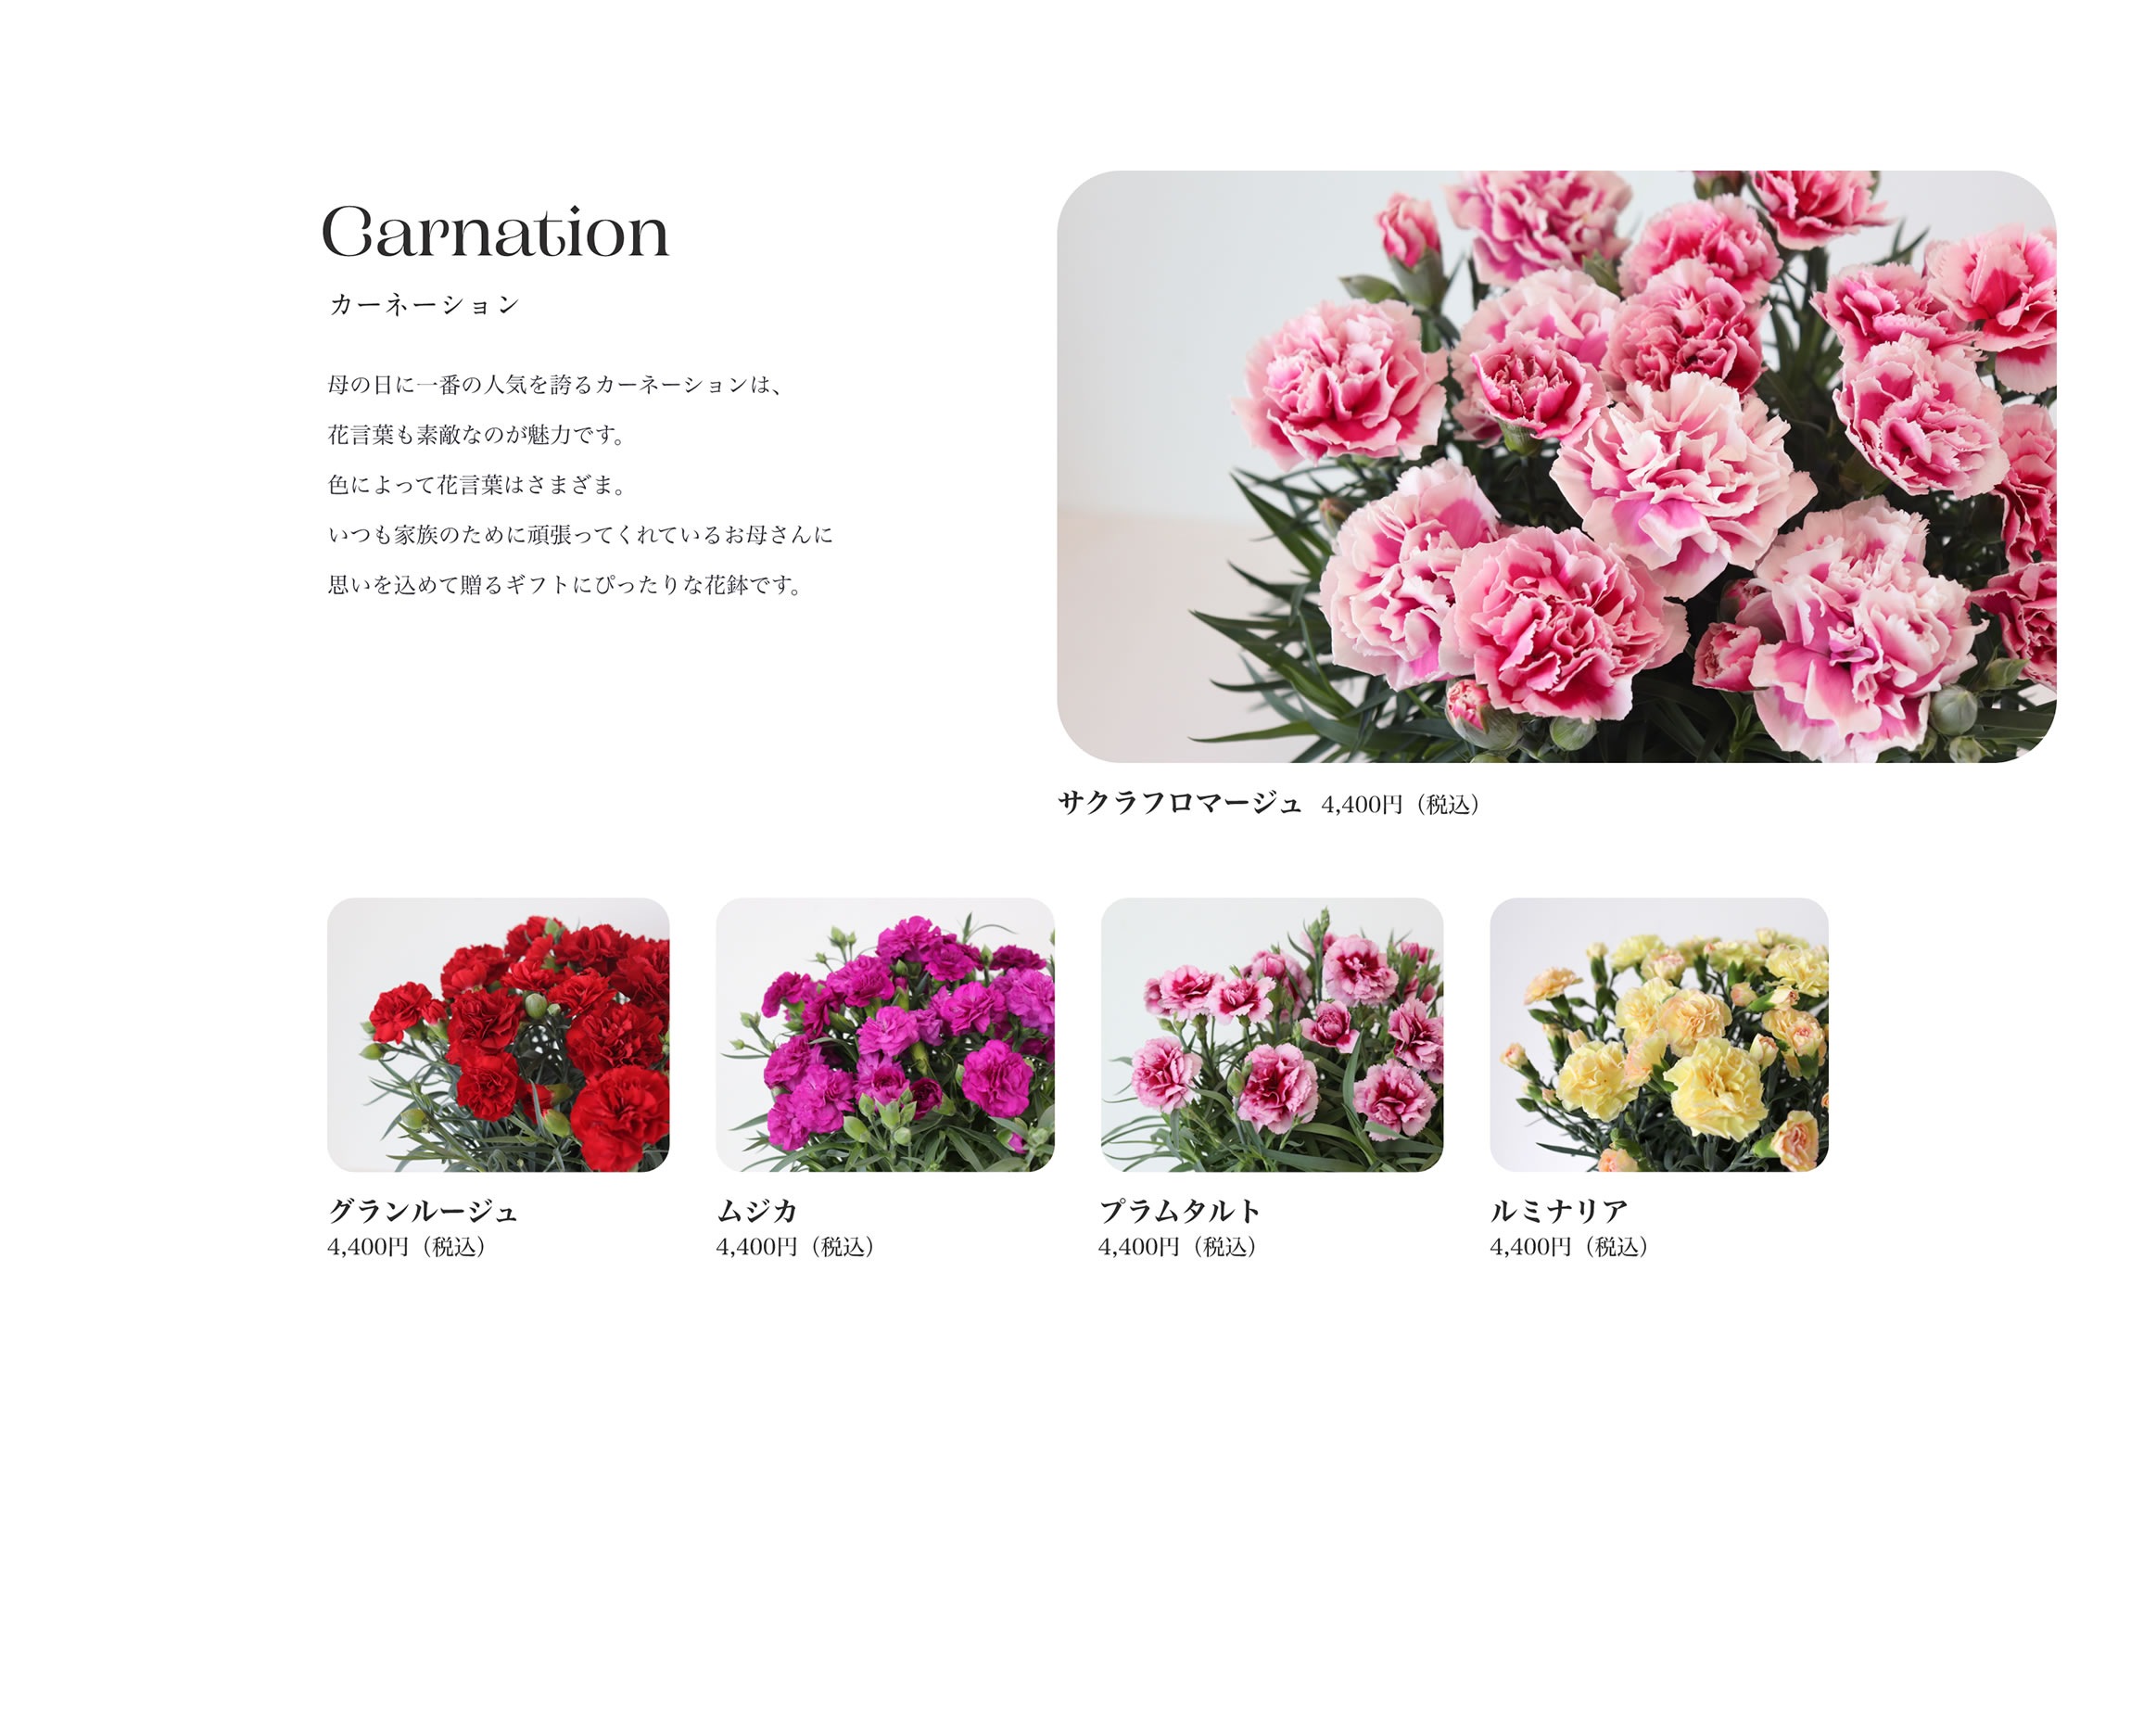 Carnation カーネーション 母の日に一番の人気を誇るカーネーションは、花言葉も素敵なのが魅力です。色によって花言葉はさまざま。いつも家族のために頑張ってくれているお母さんに思いを込めて贈るギフトにぴったりな花鉢です。